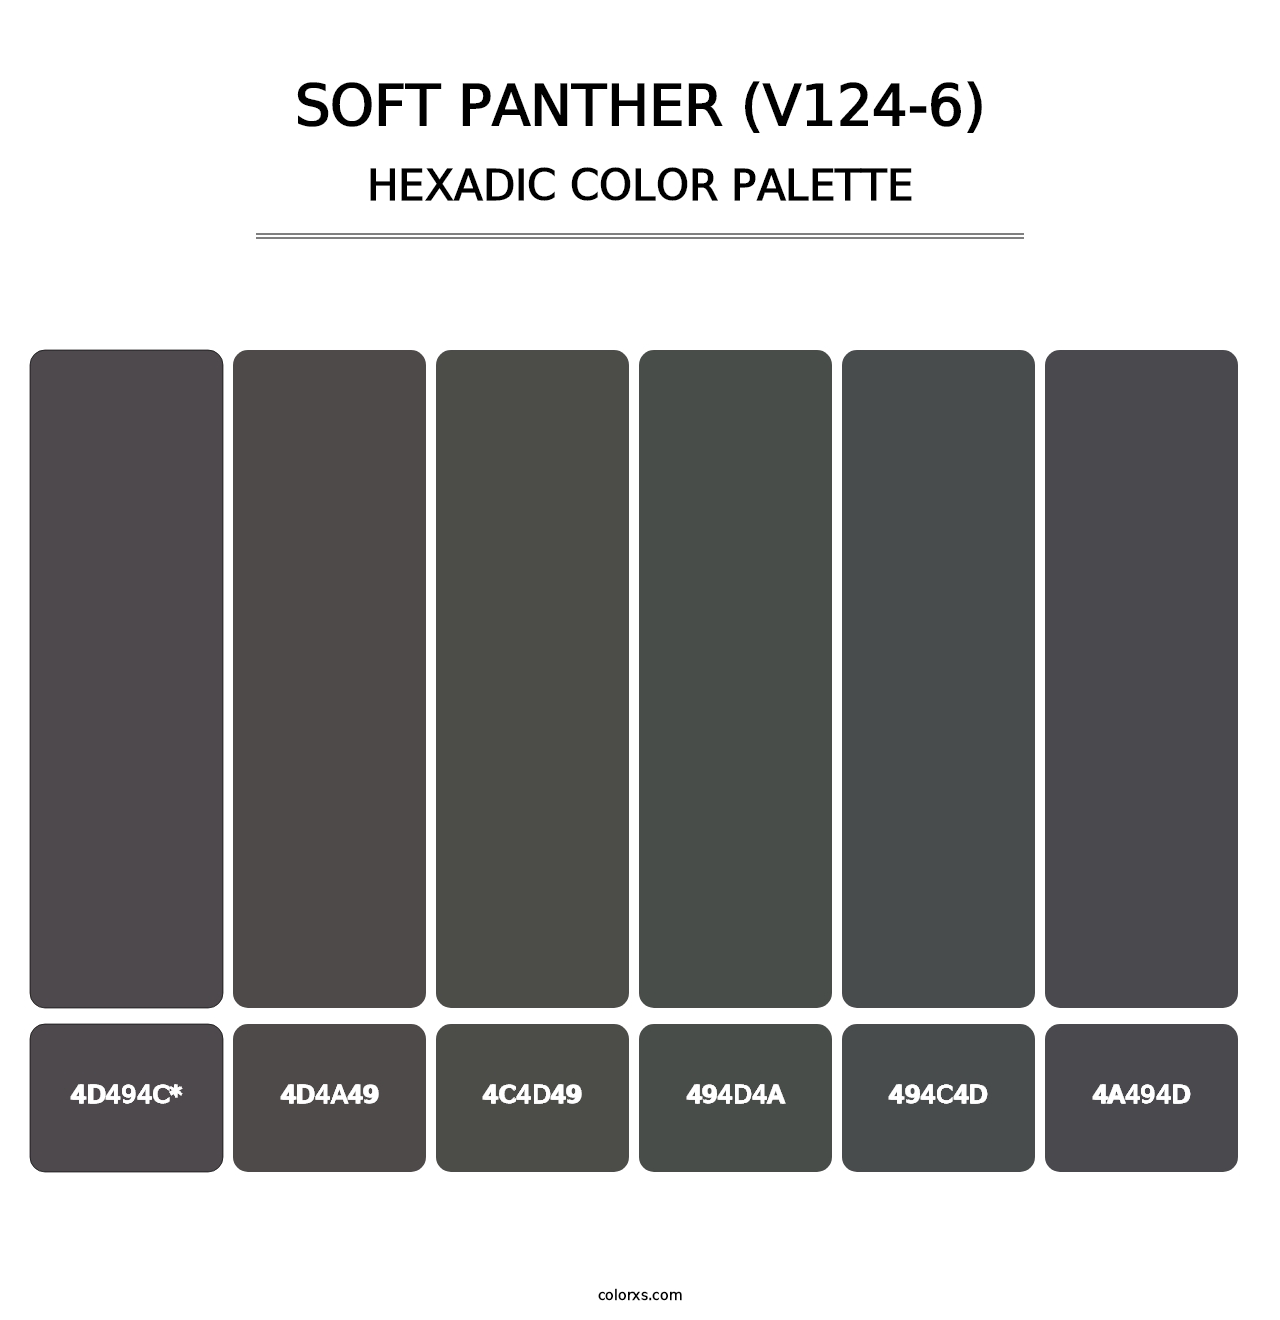 Soft Panther (V124-6) - Hexadic Color Palette